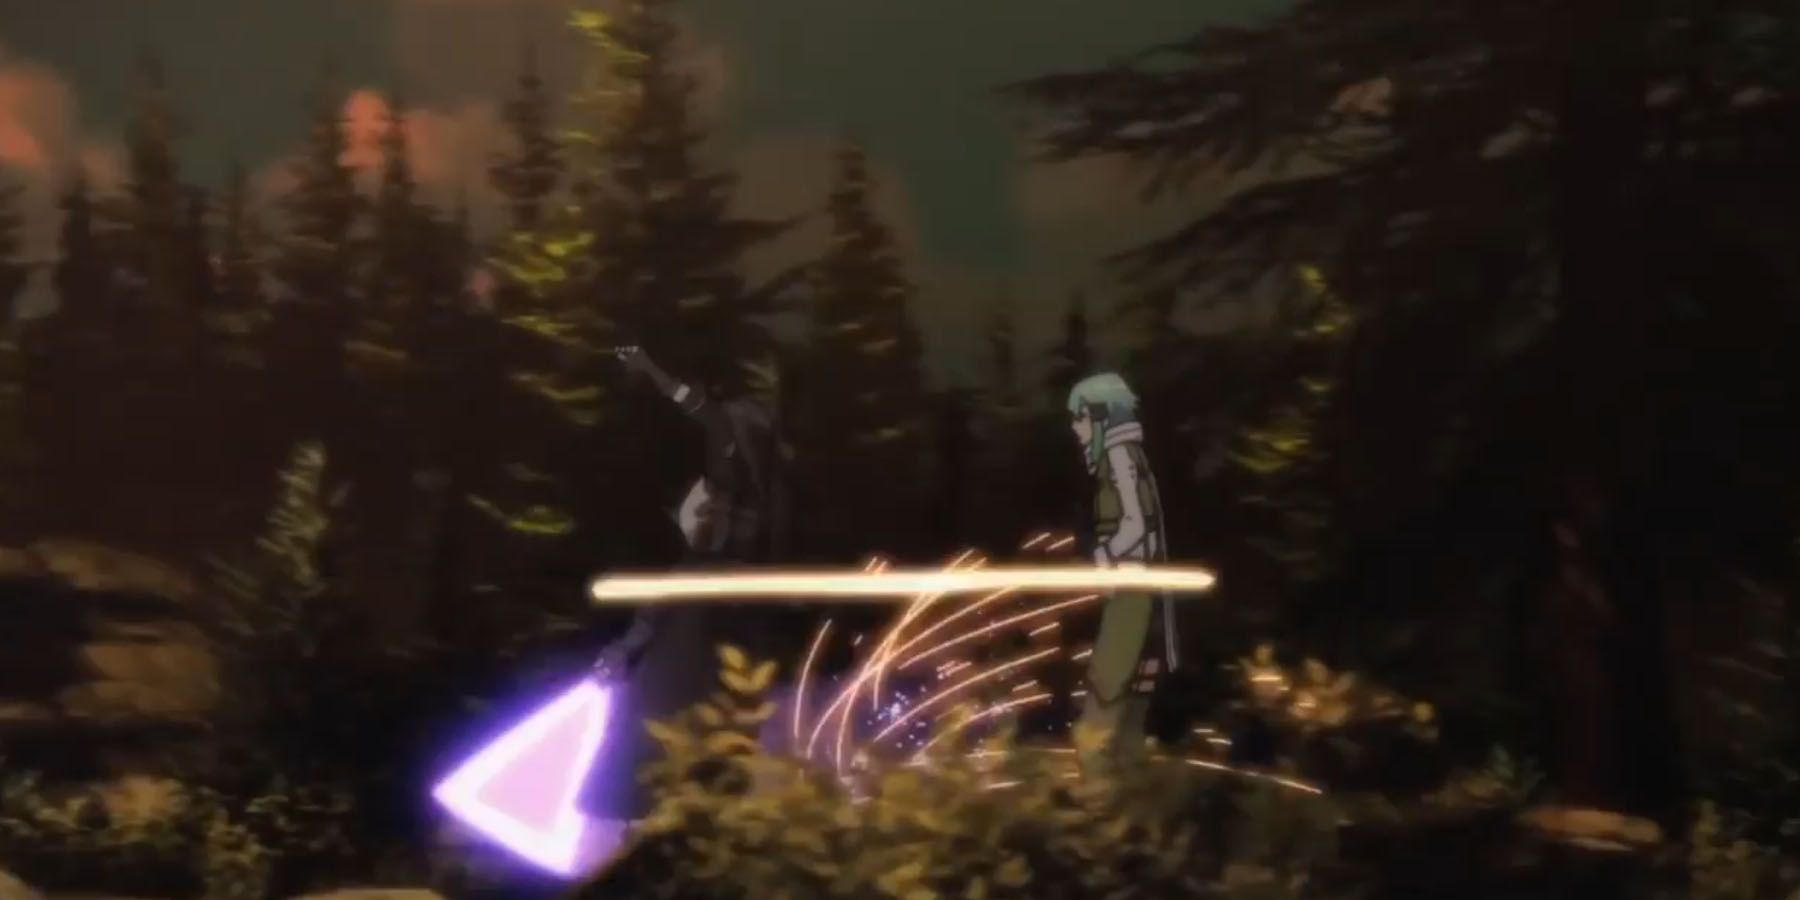 Kirito deflecting bullets with his beam saber